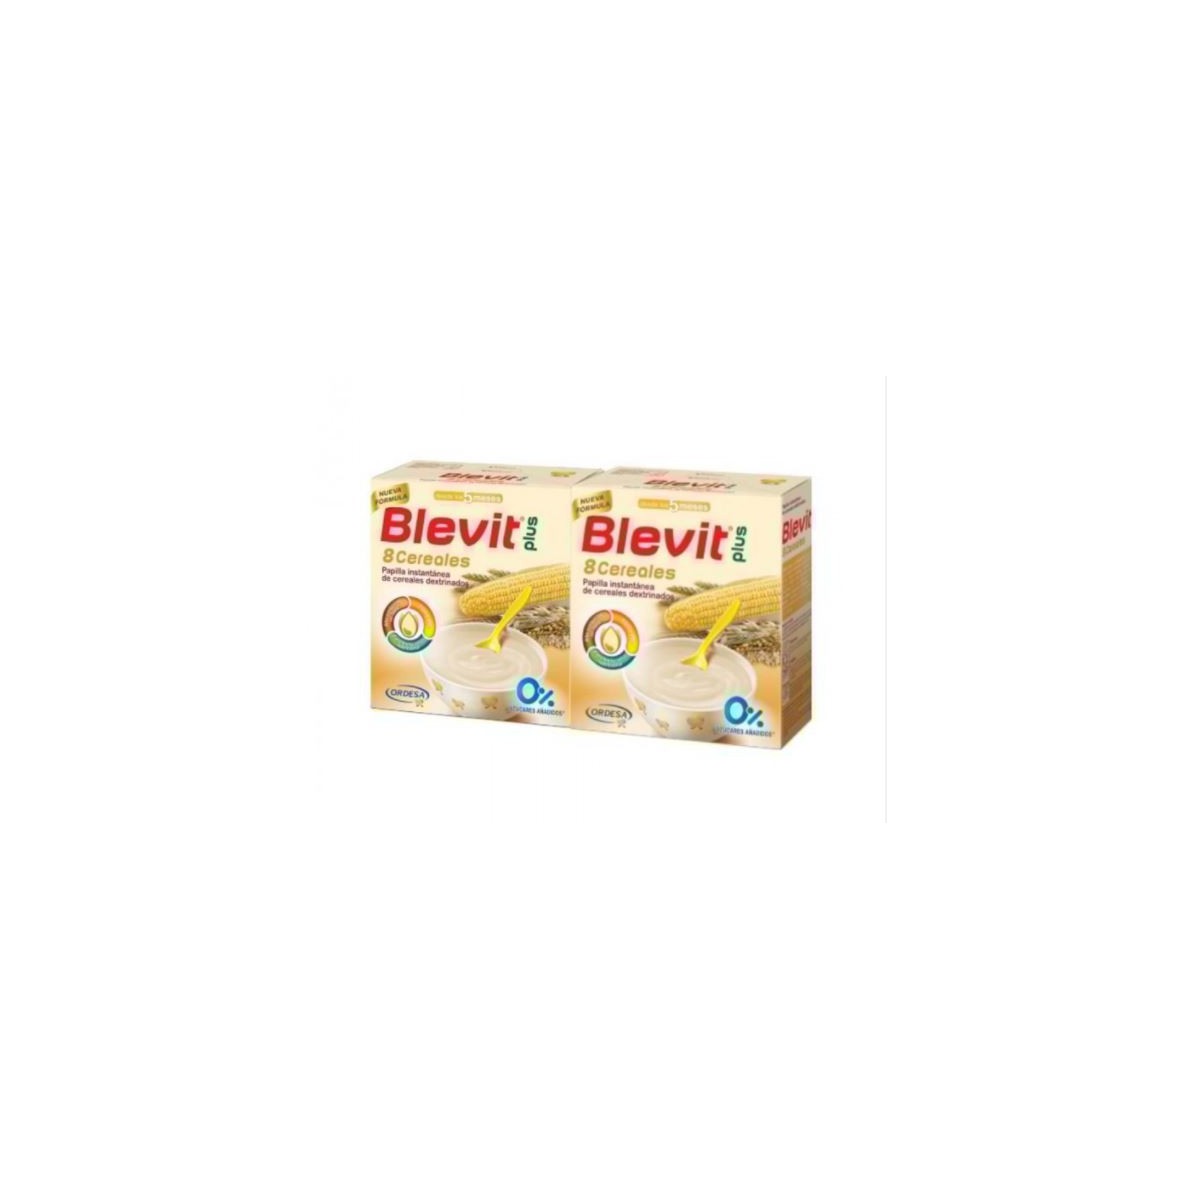 Blevit Plus 8 Cereales Duplo 2x600g